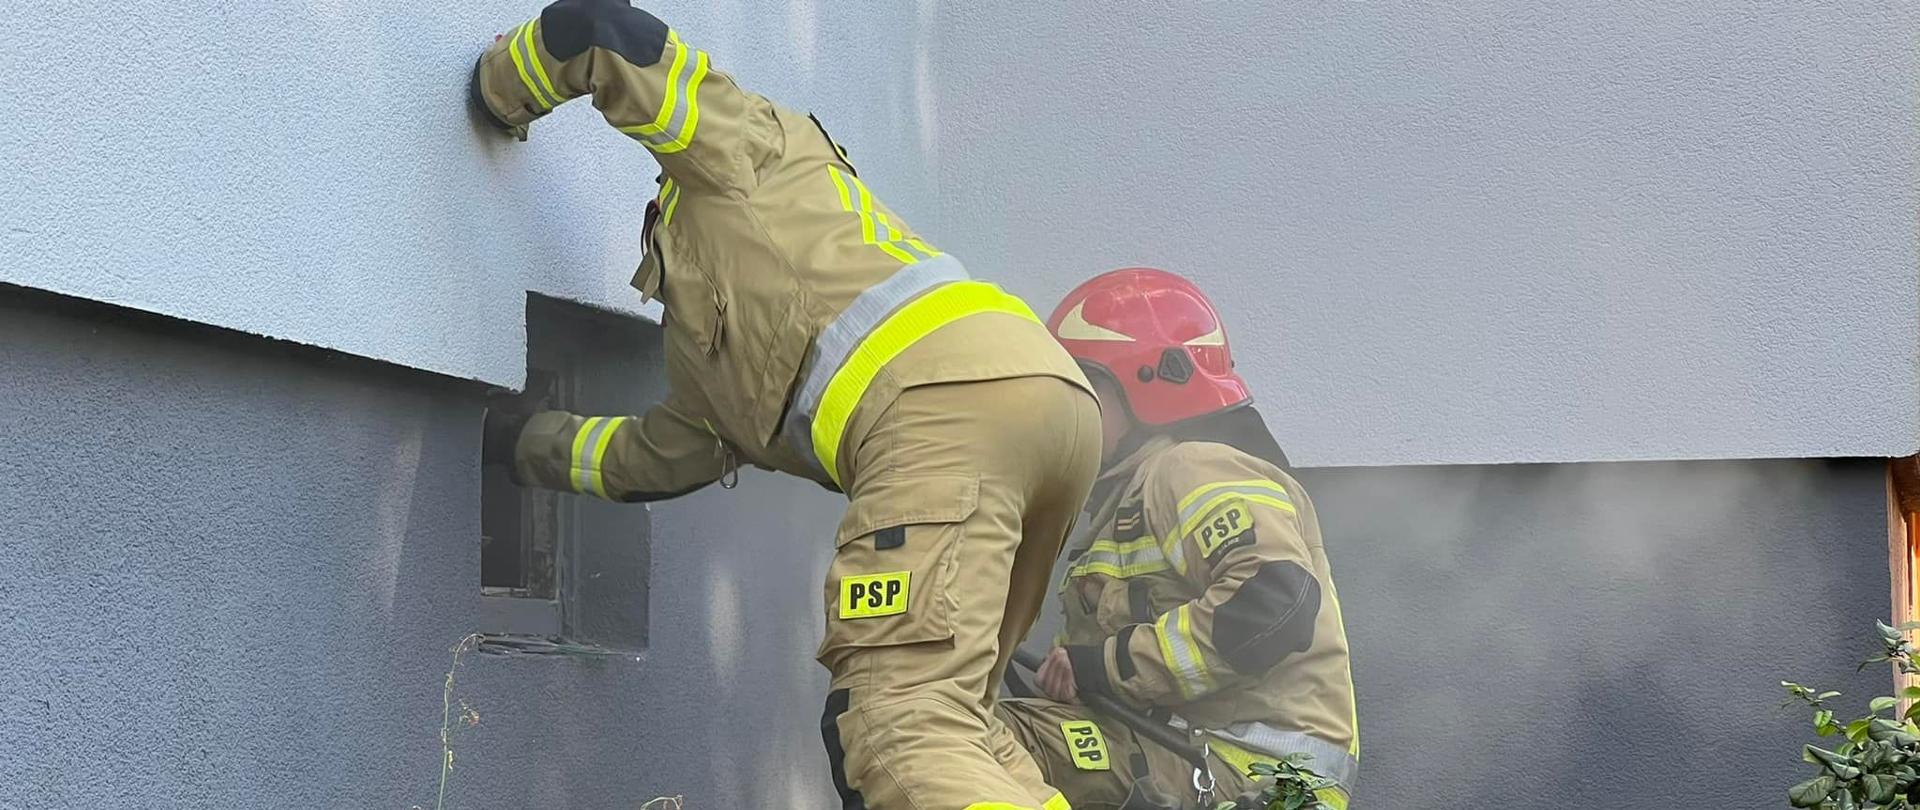 Na zdjęciu widać ratowników ze straży pożarnej. Prowadzą działania ratowniczo-gaśnicze. Umundurowani. Zdjęcie wykonane w ciągu dnia.